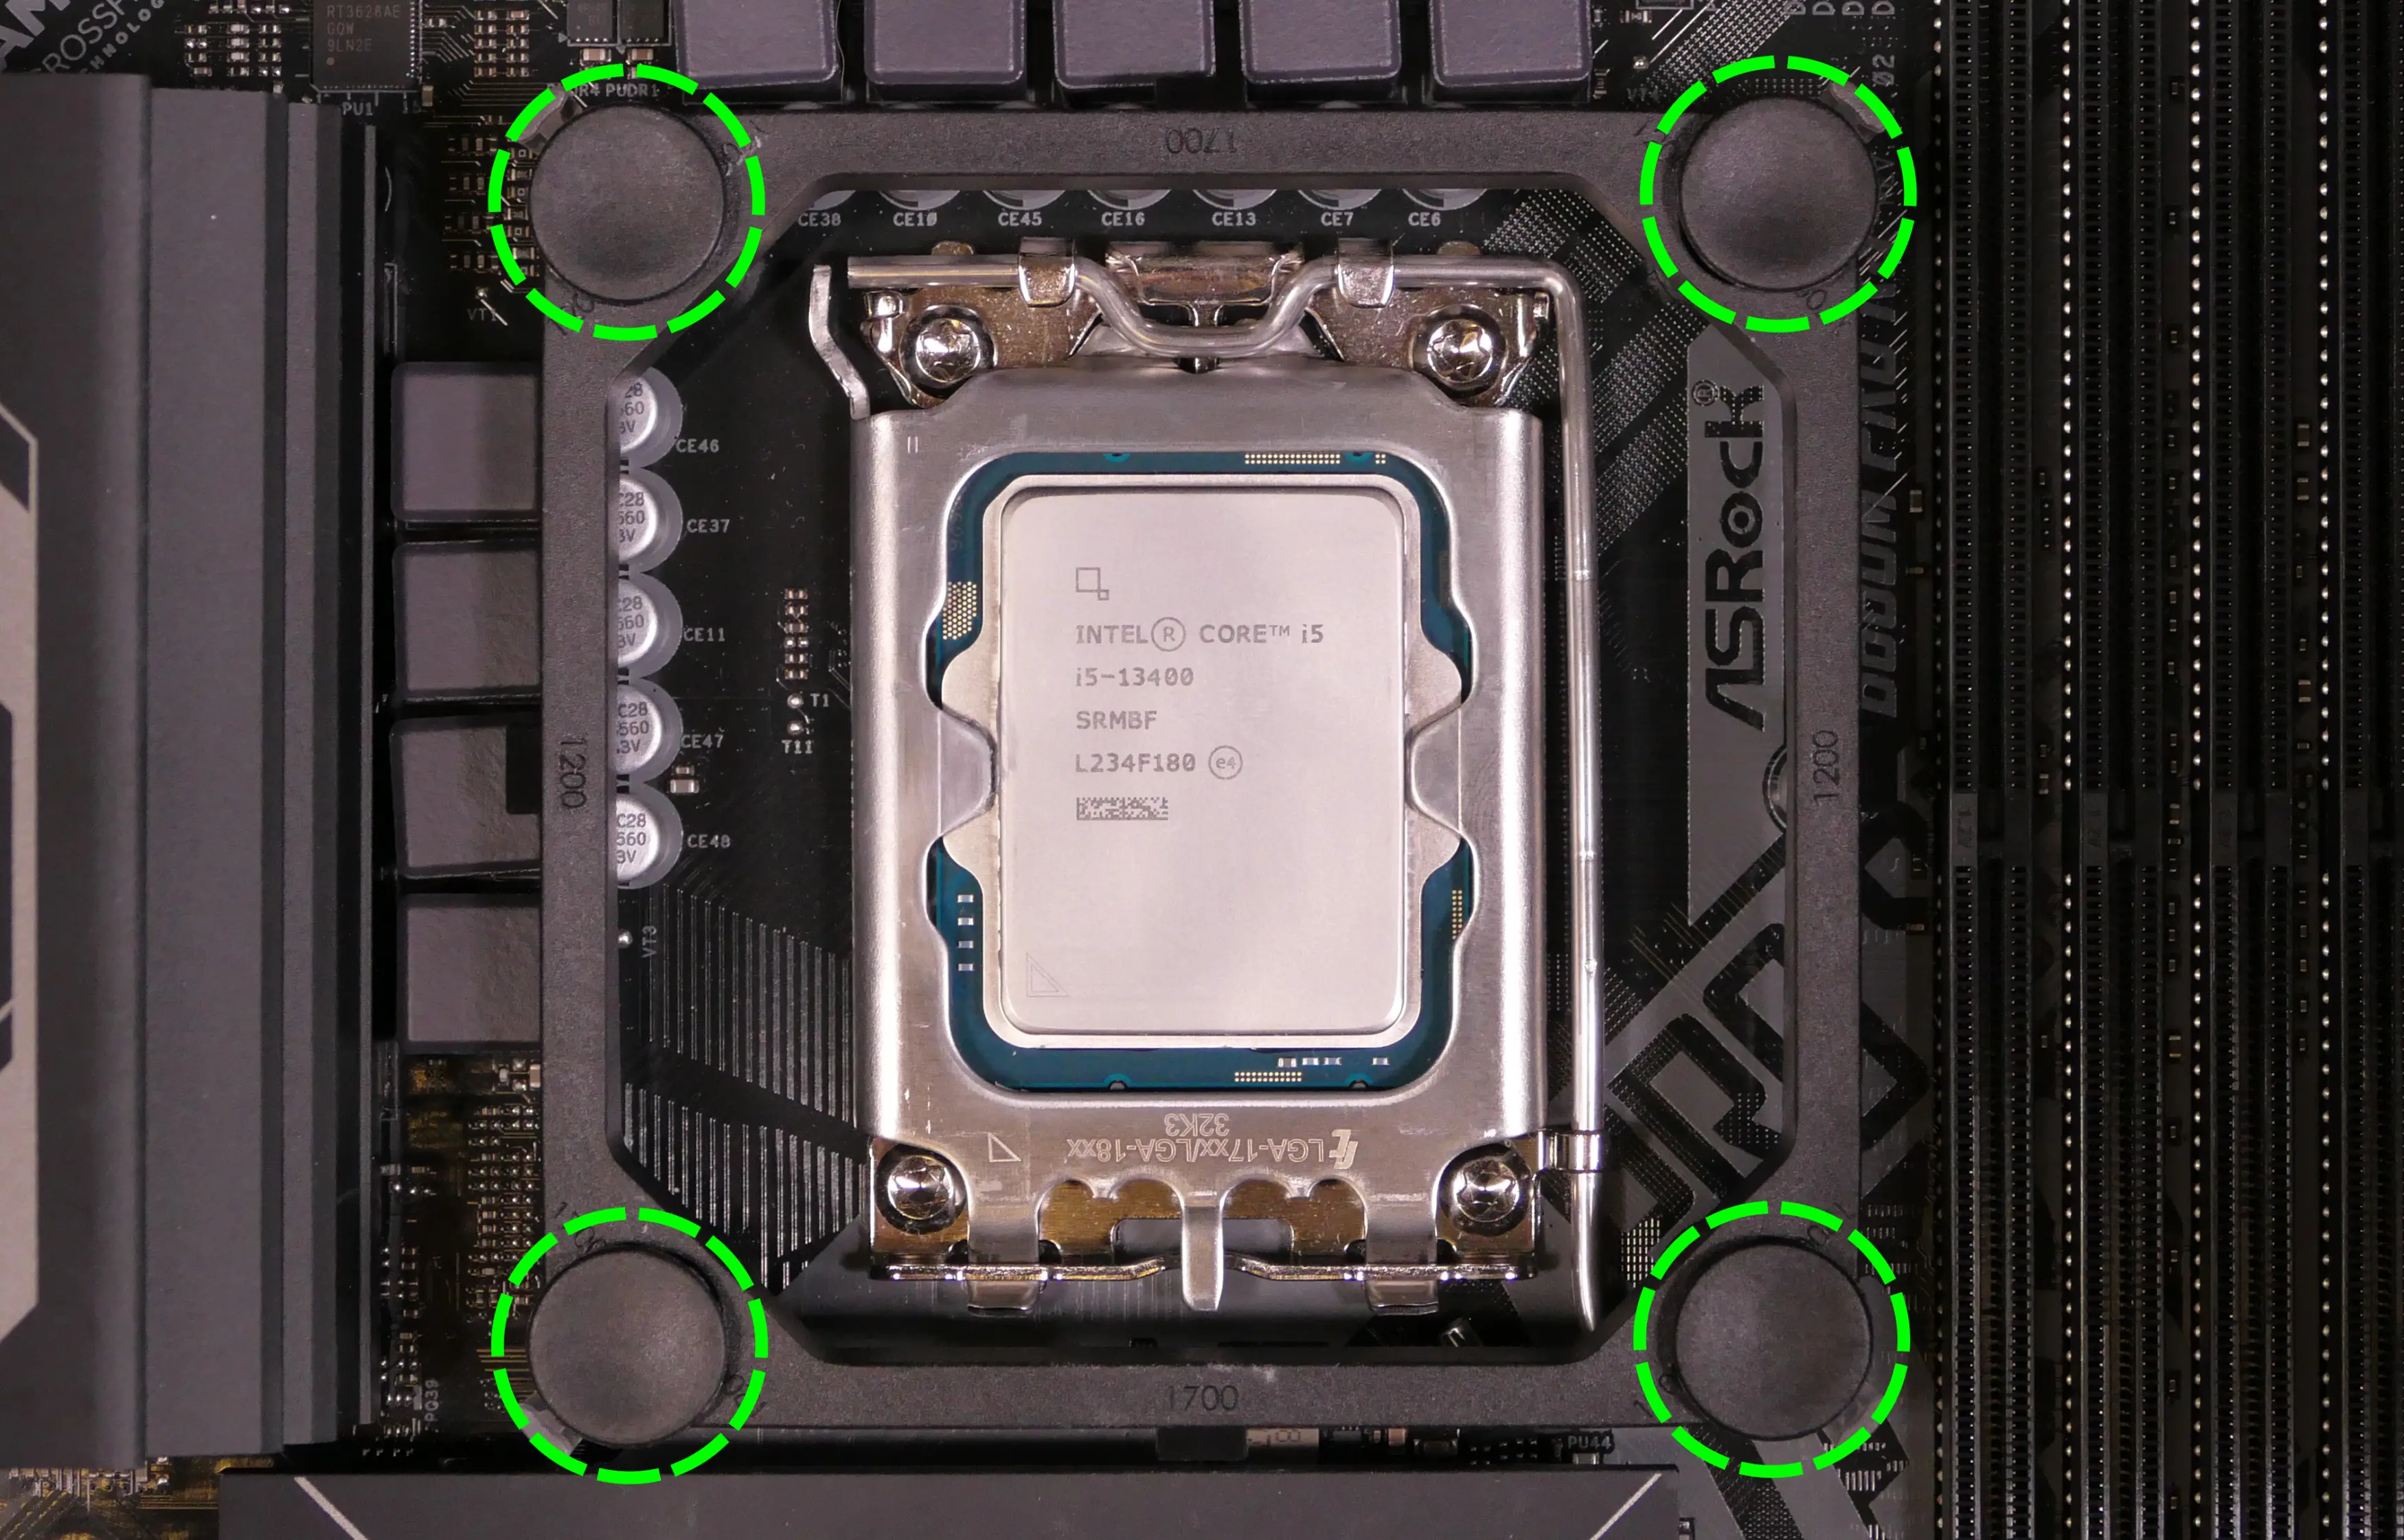 CPU cooler mounting bracket